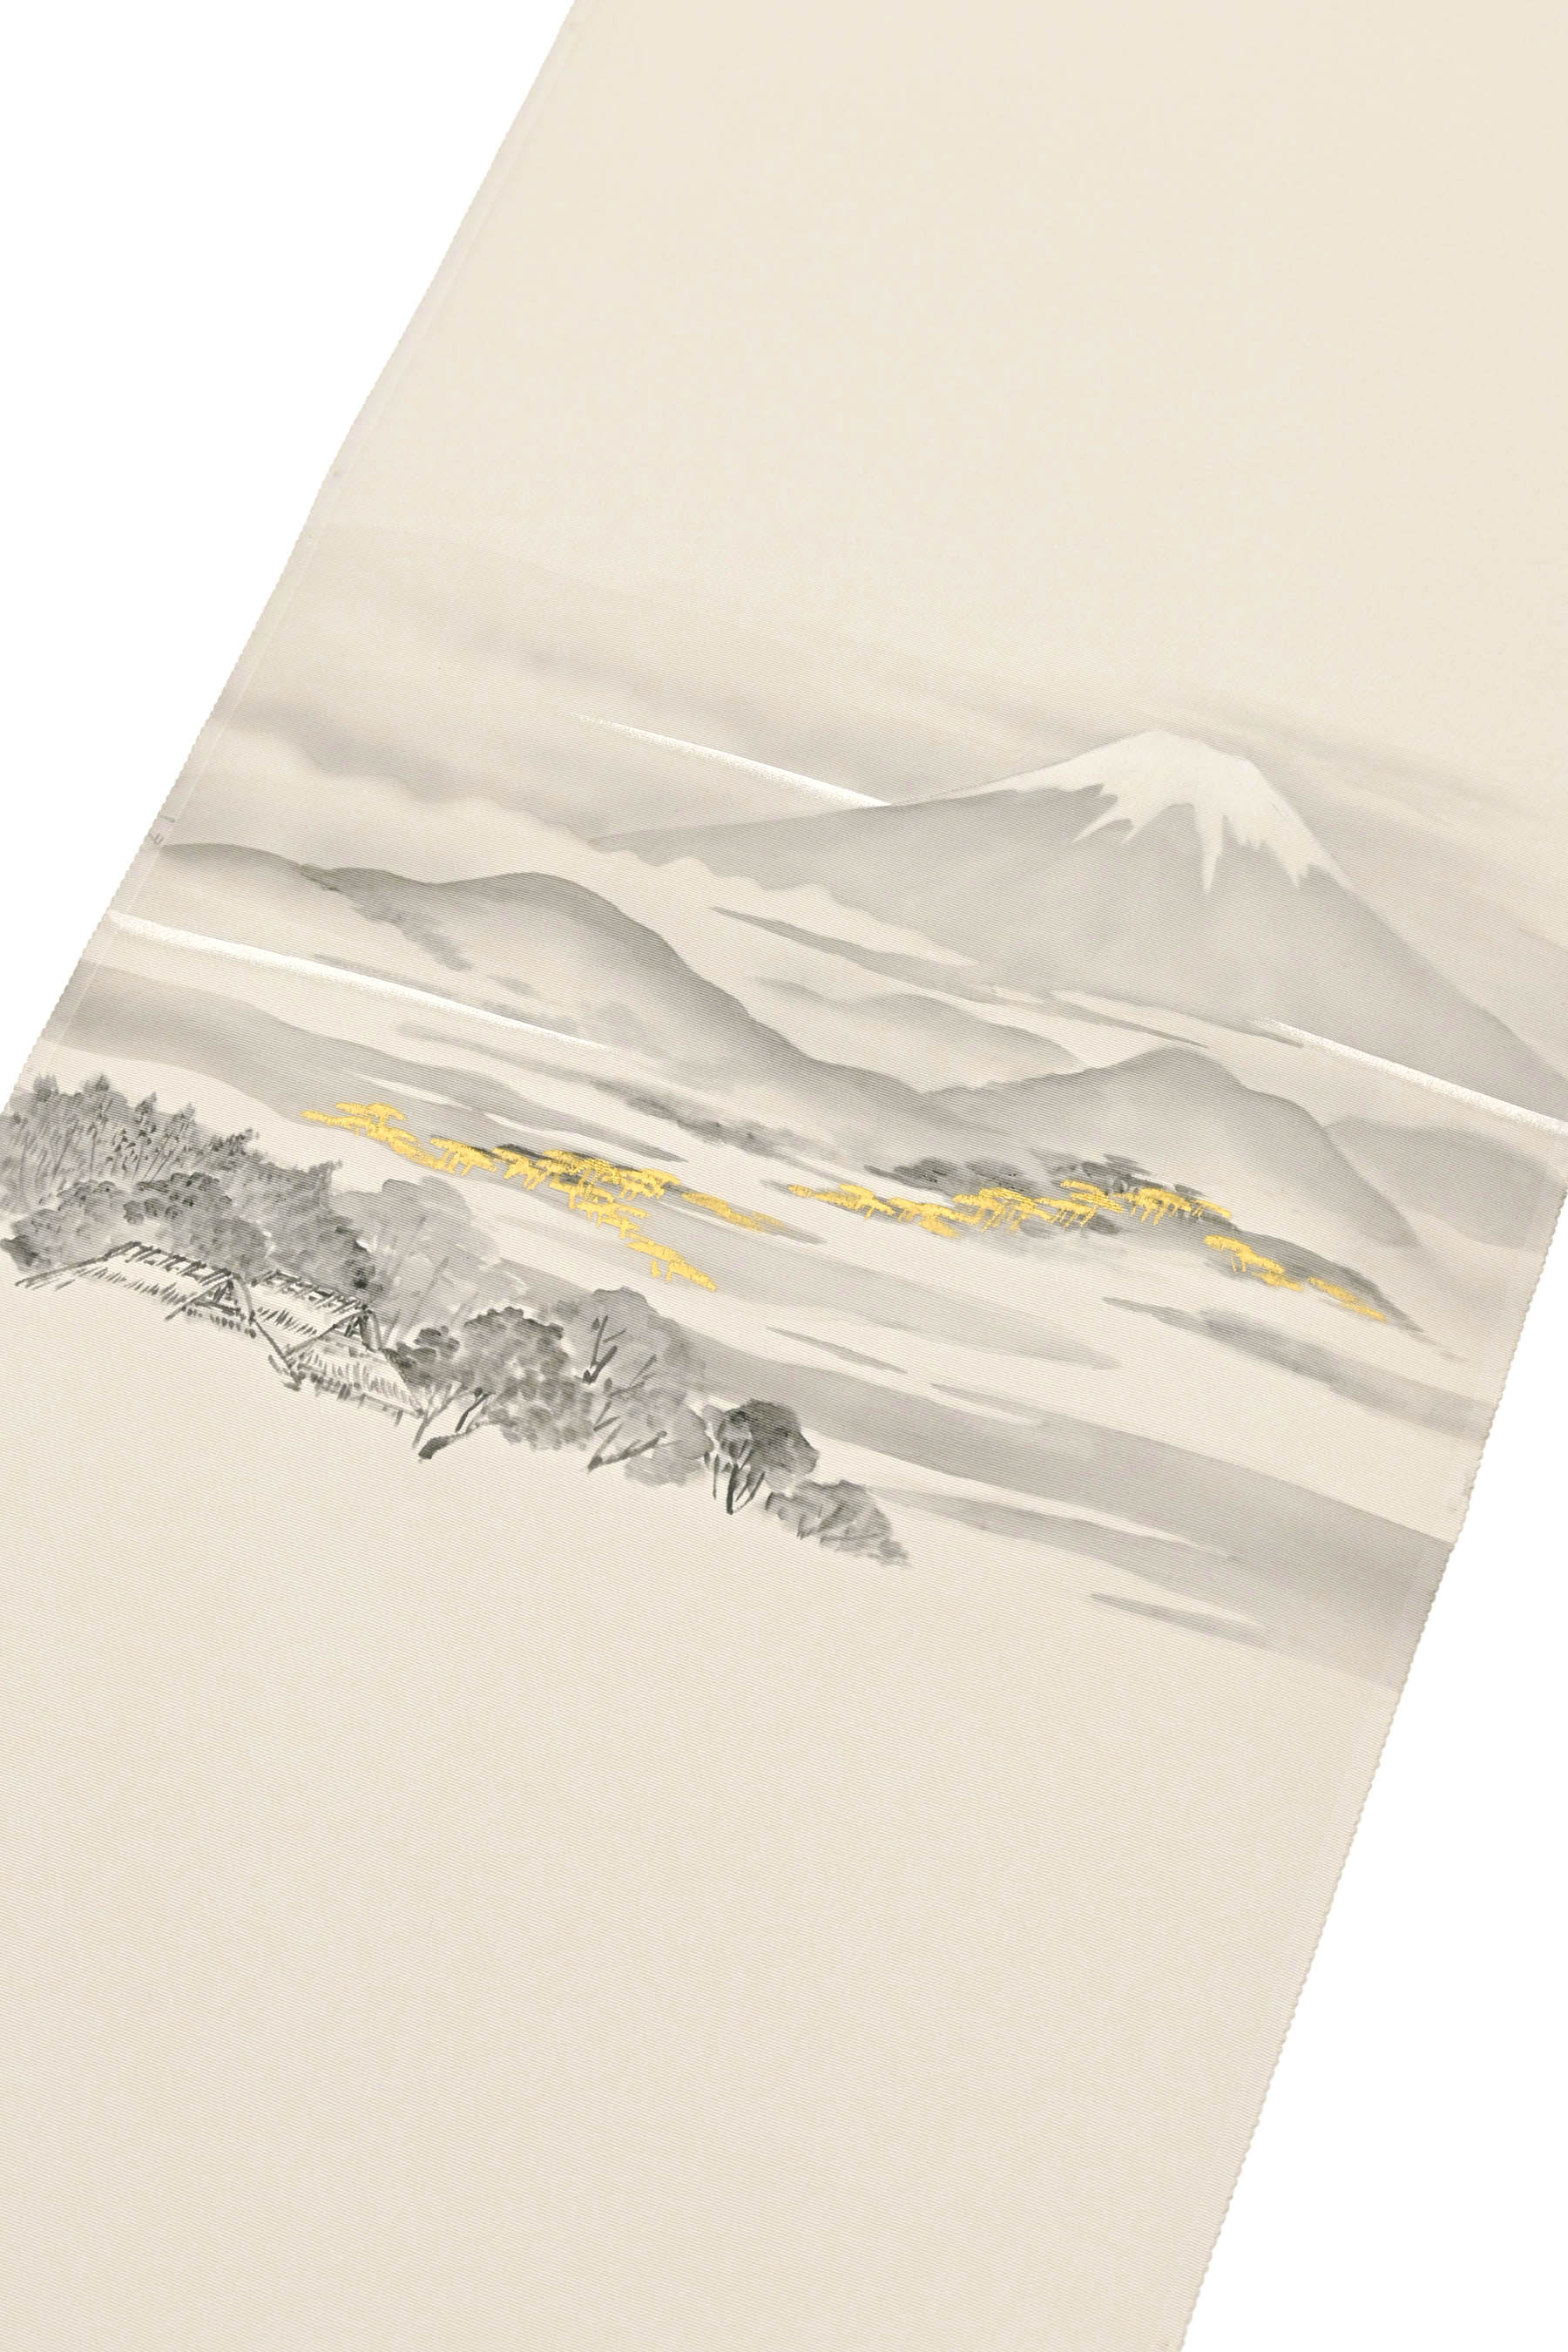 一流染匠 一富司】 特選本手描き京友禅九寸名古屋帯 「富士山」 日本の